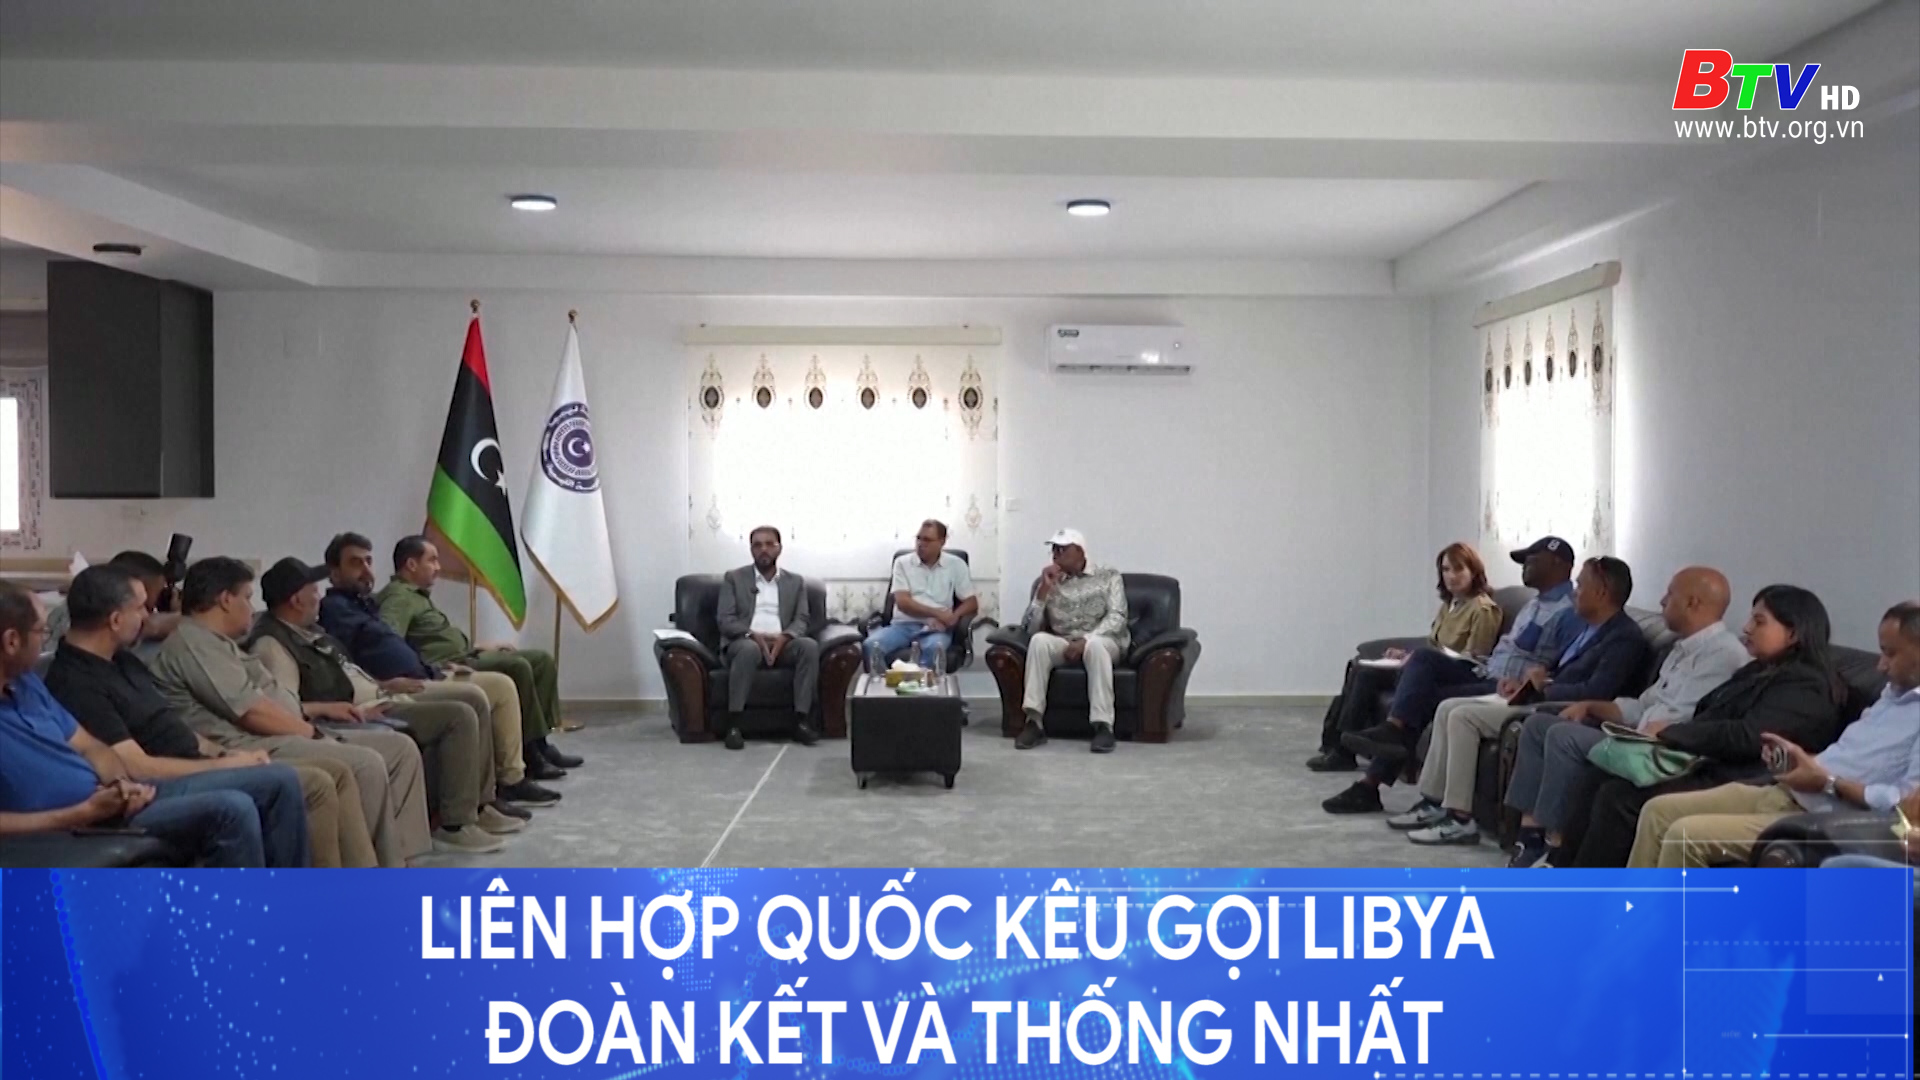 Liên hợp quốc kêu gọi Libya đoàn kết và thống nhất	